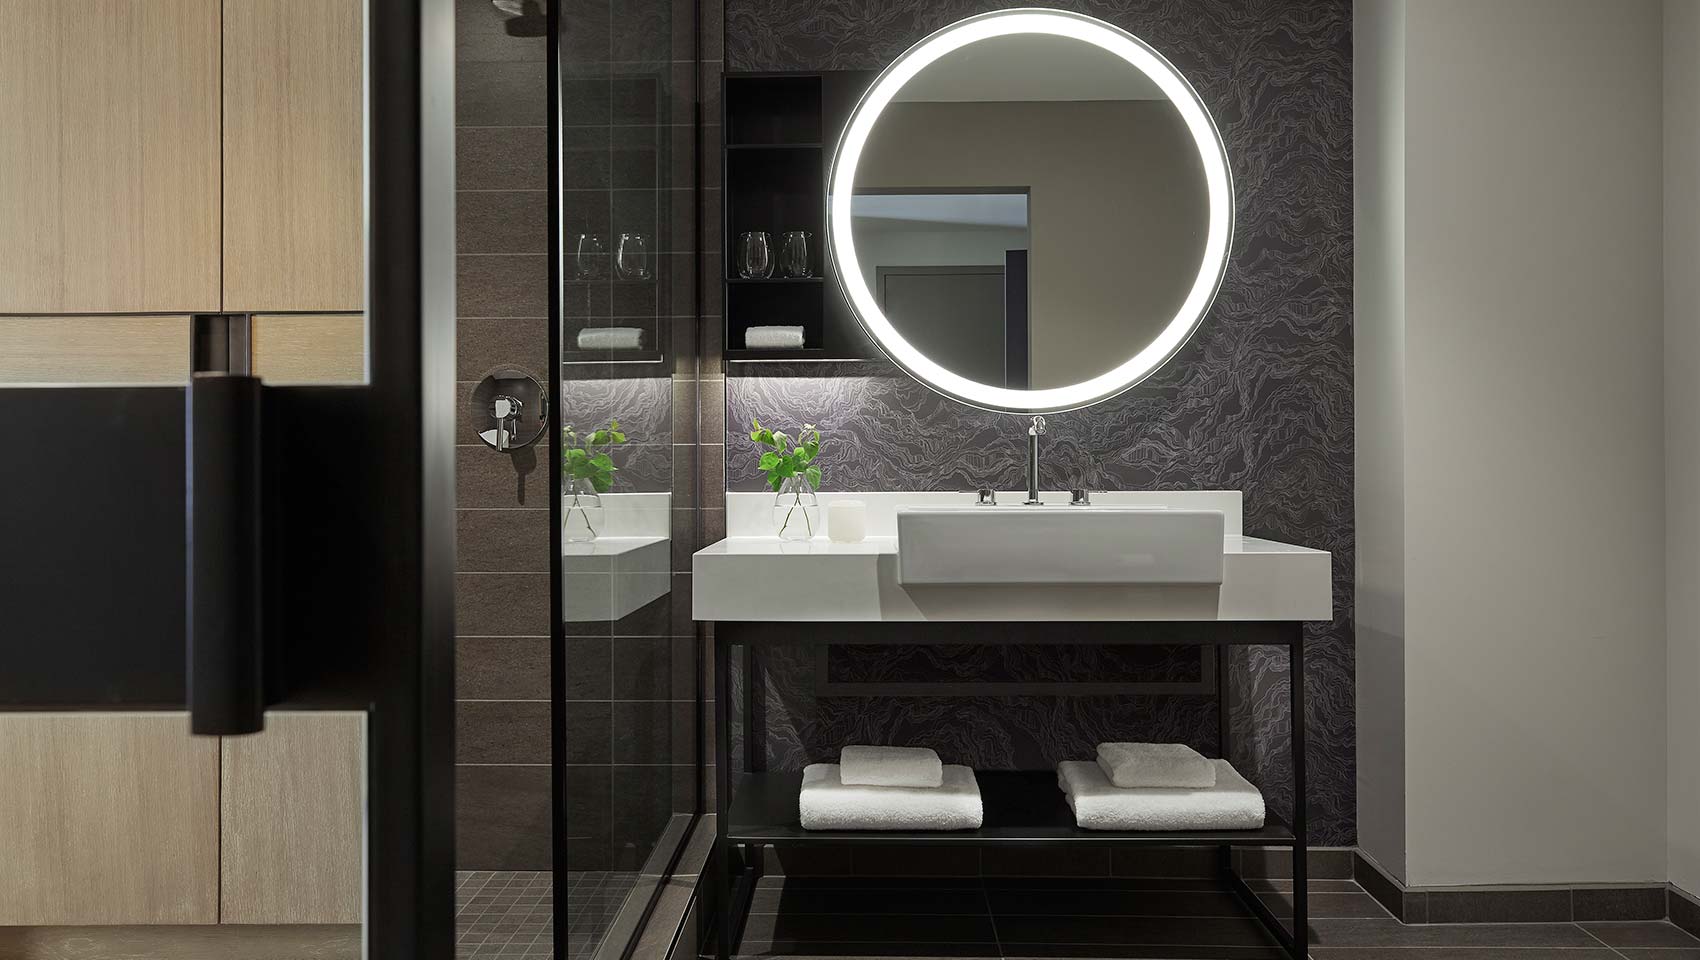 Guestroom Bathroom Vanity